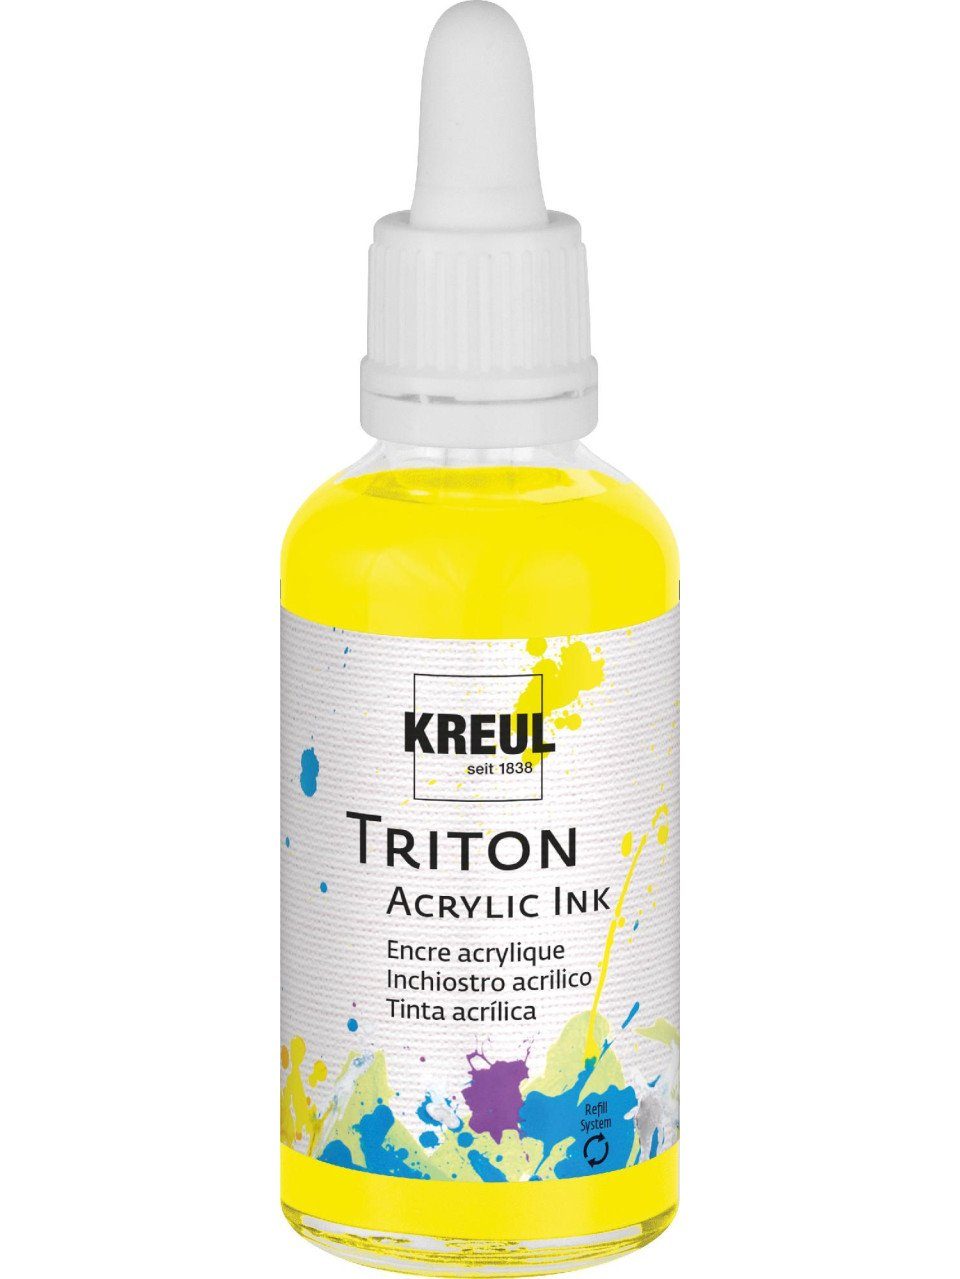 Kreul Künstlerstift Kreul Triton Acrylic Ink Fluoreszierend gelb 50 ml